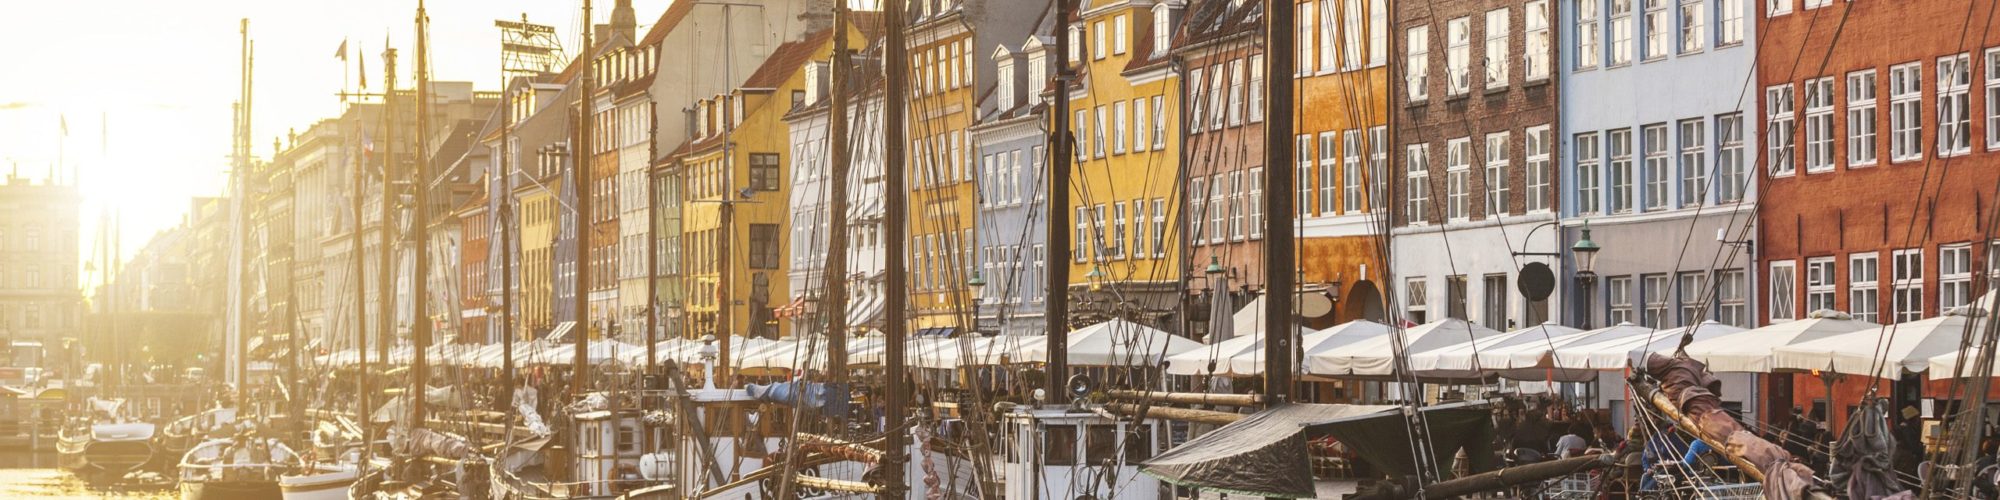 Copenhagen travel agents packages deals